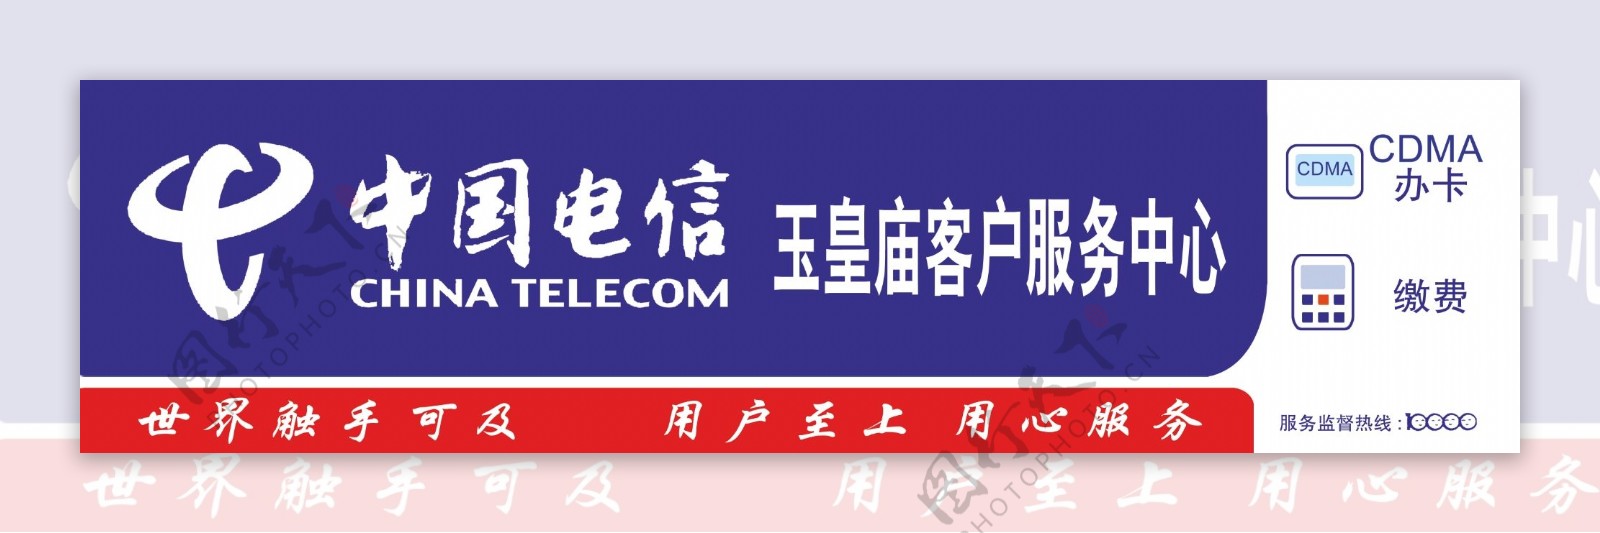 中国电信模板设计1图片